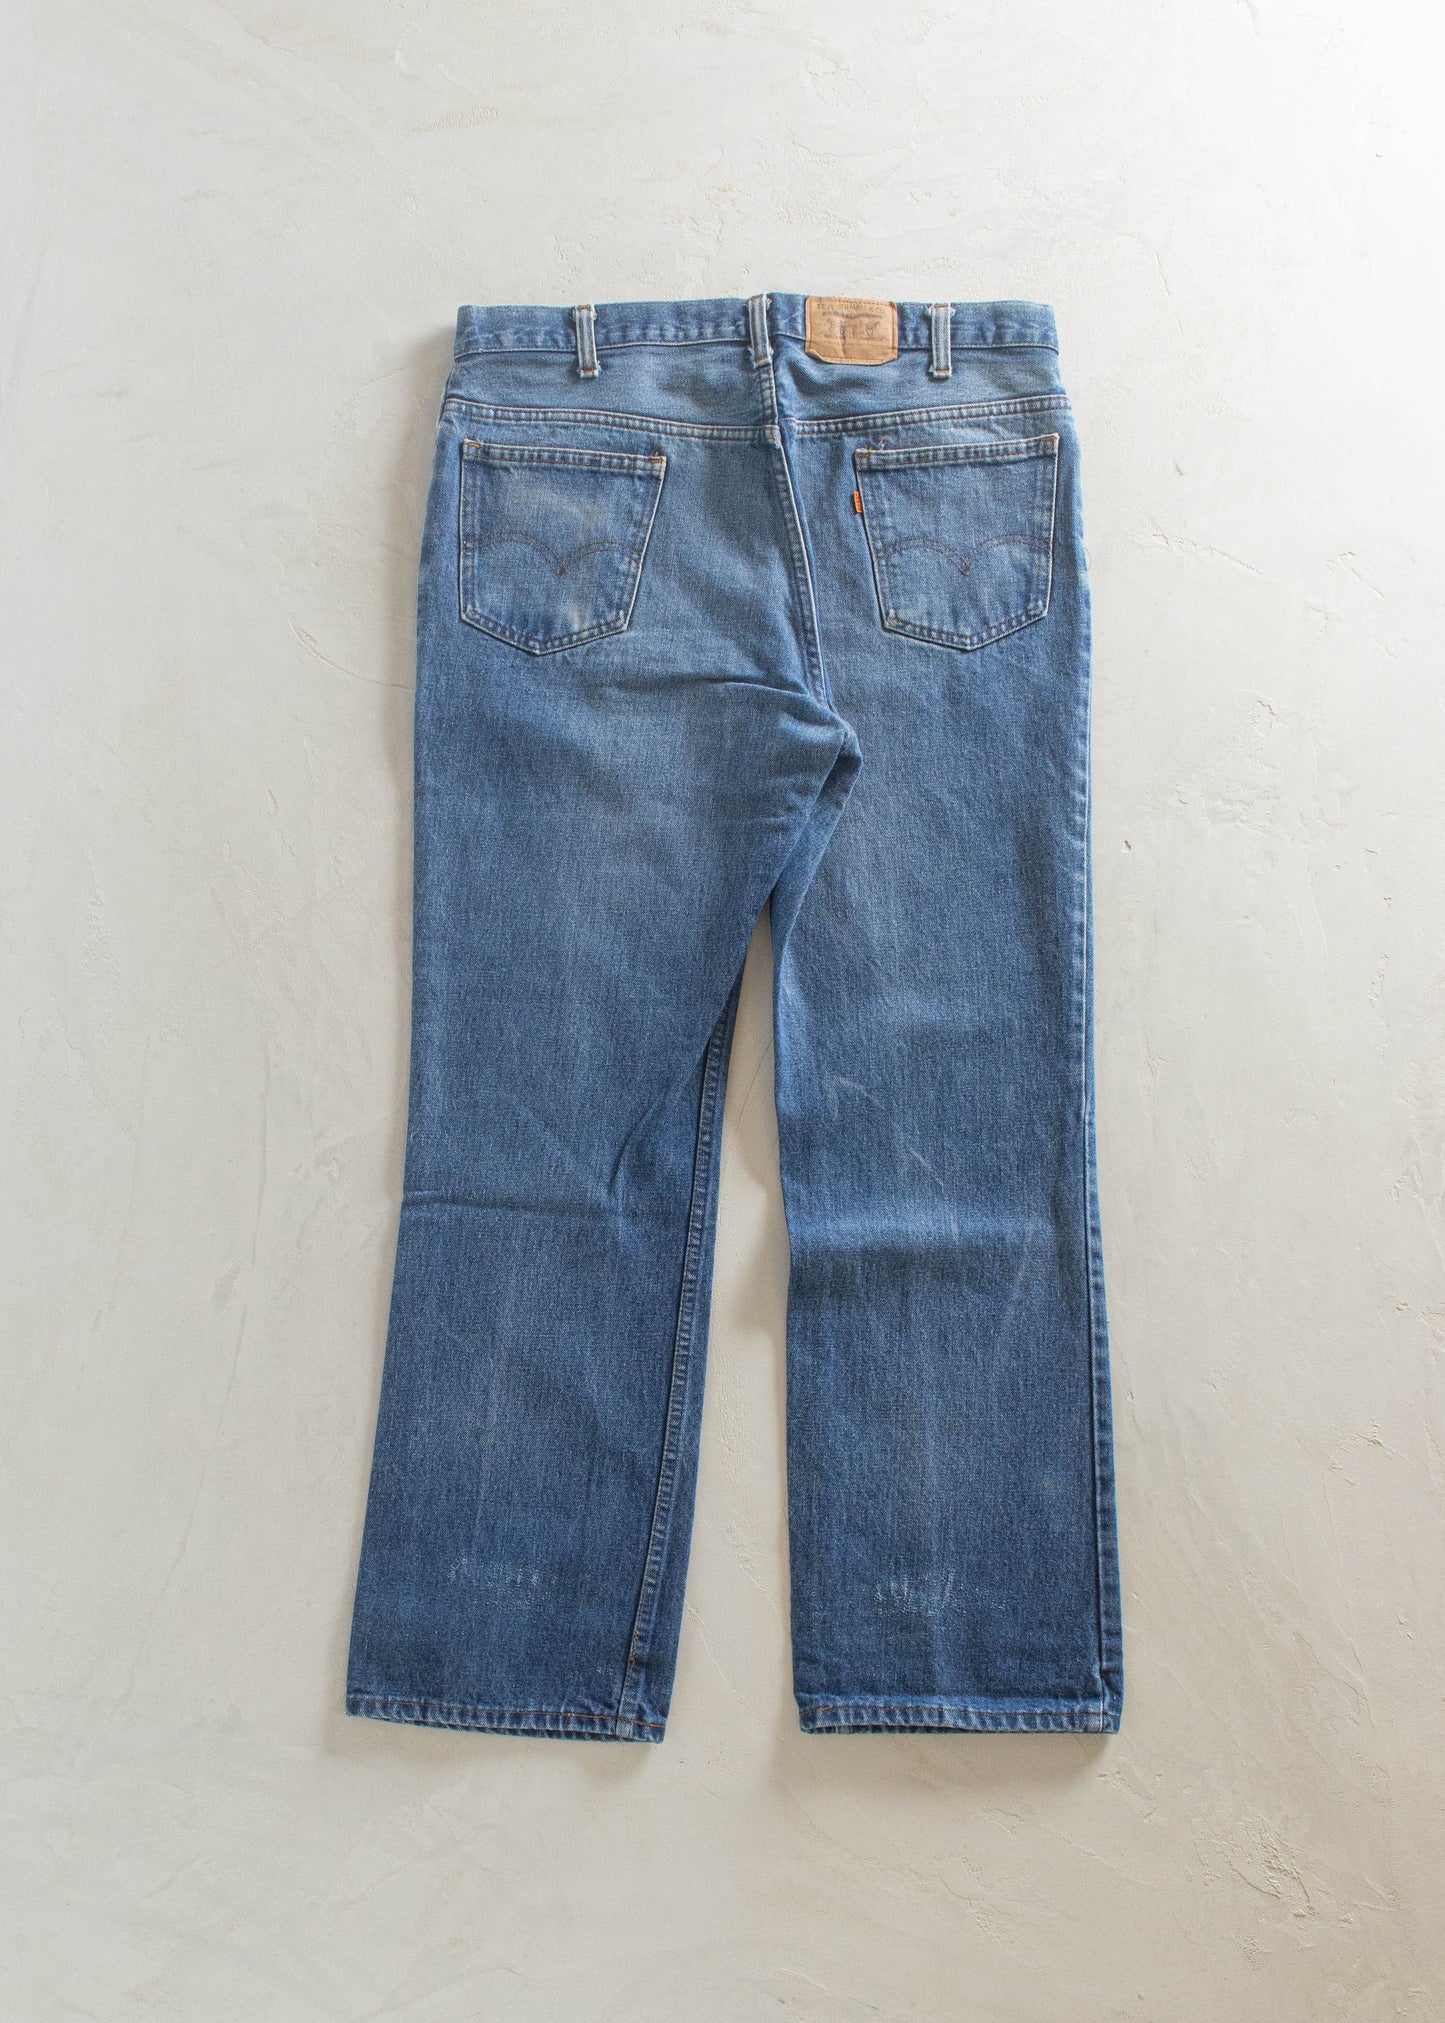 1980s Levi's Orange Tab Midwash Jeans Size Women's 32 Men's 34